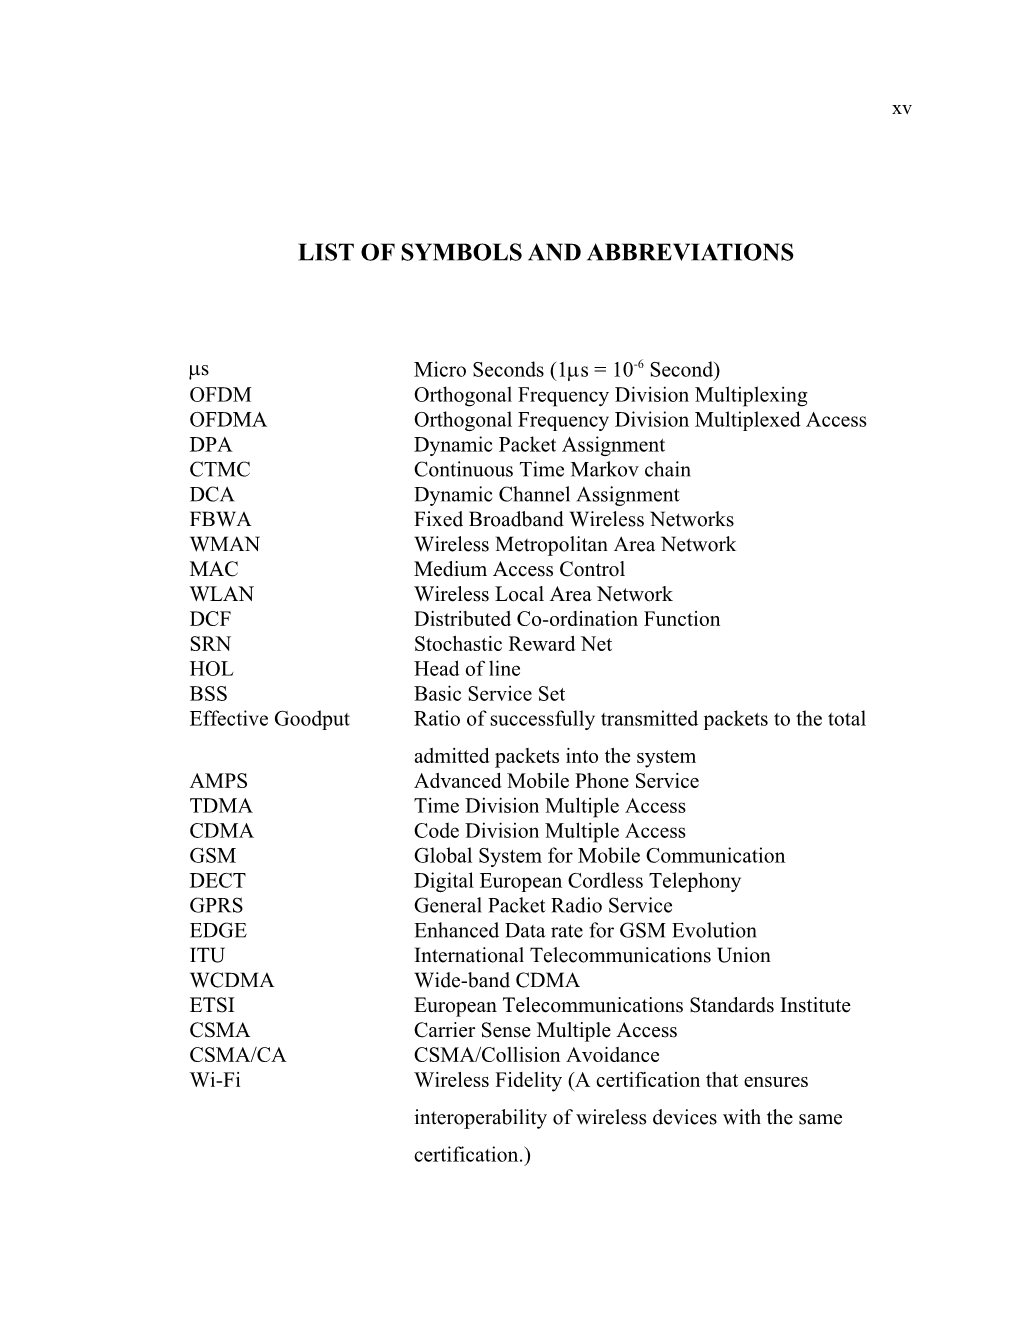 List of Symbols and Abbreviations